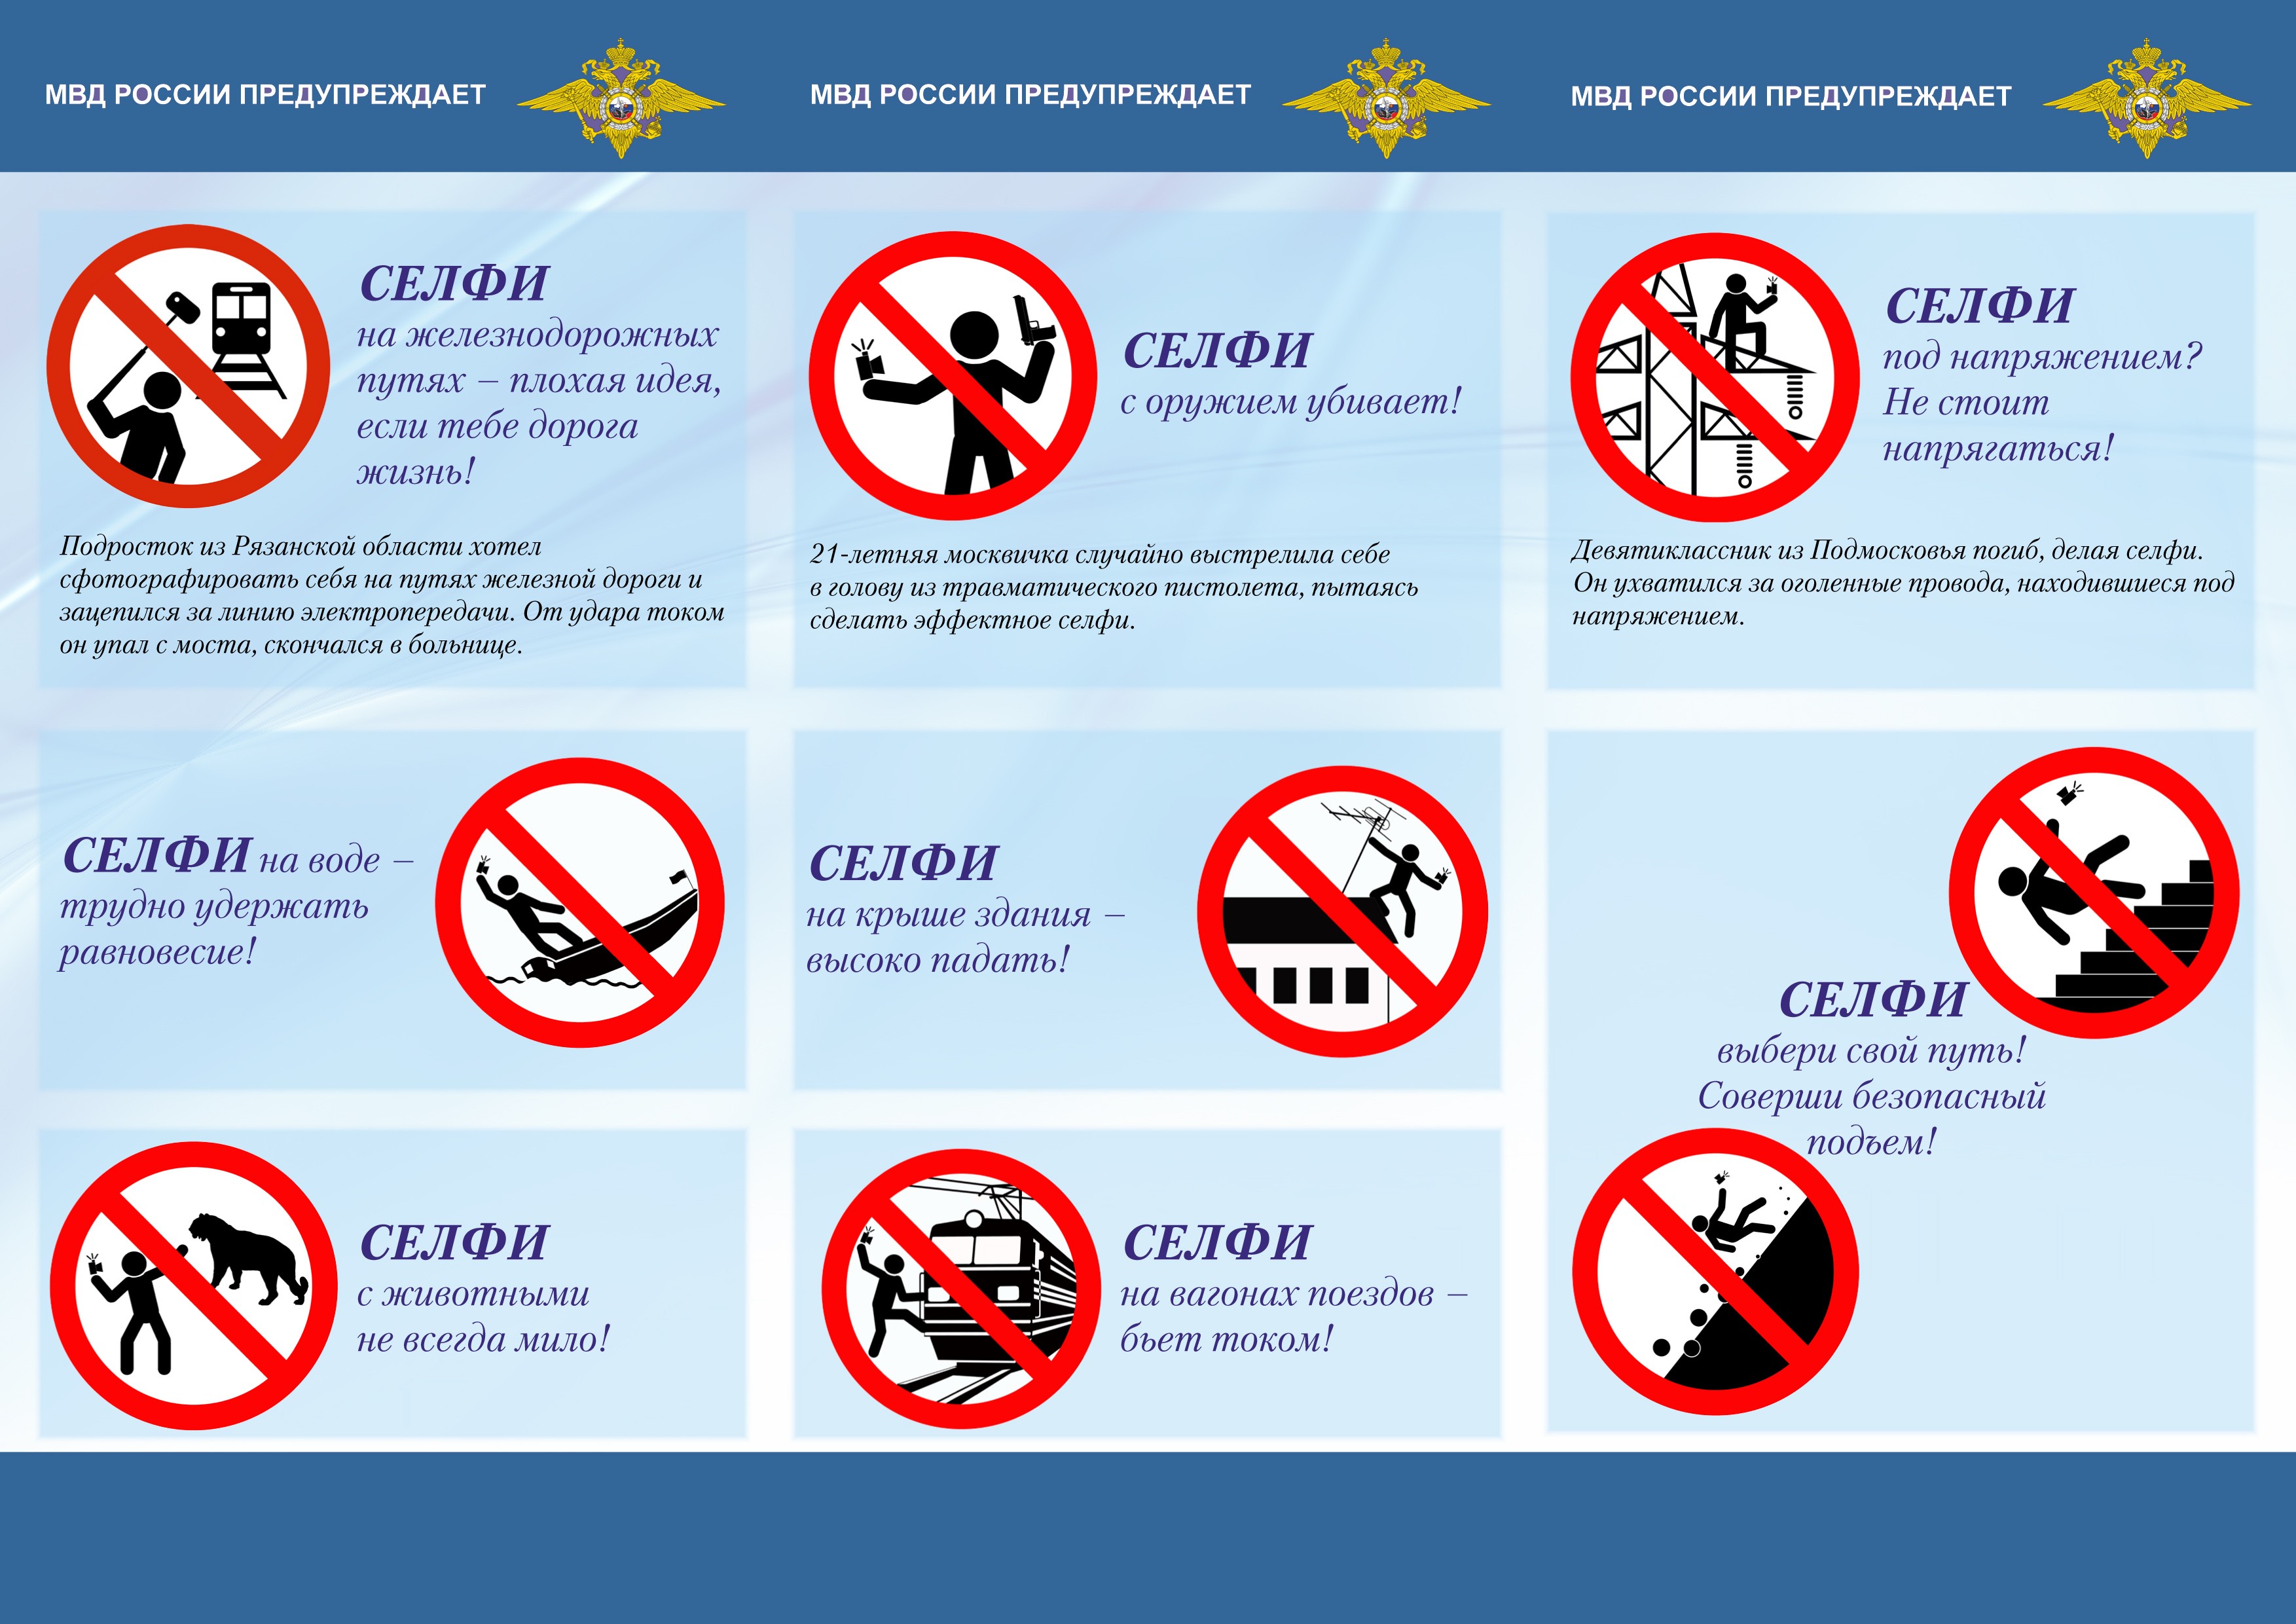 Manual dá dicas de como se fotografar sem sofrer acidentes (Foto: Divulgação/Governo da Rússia)